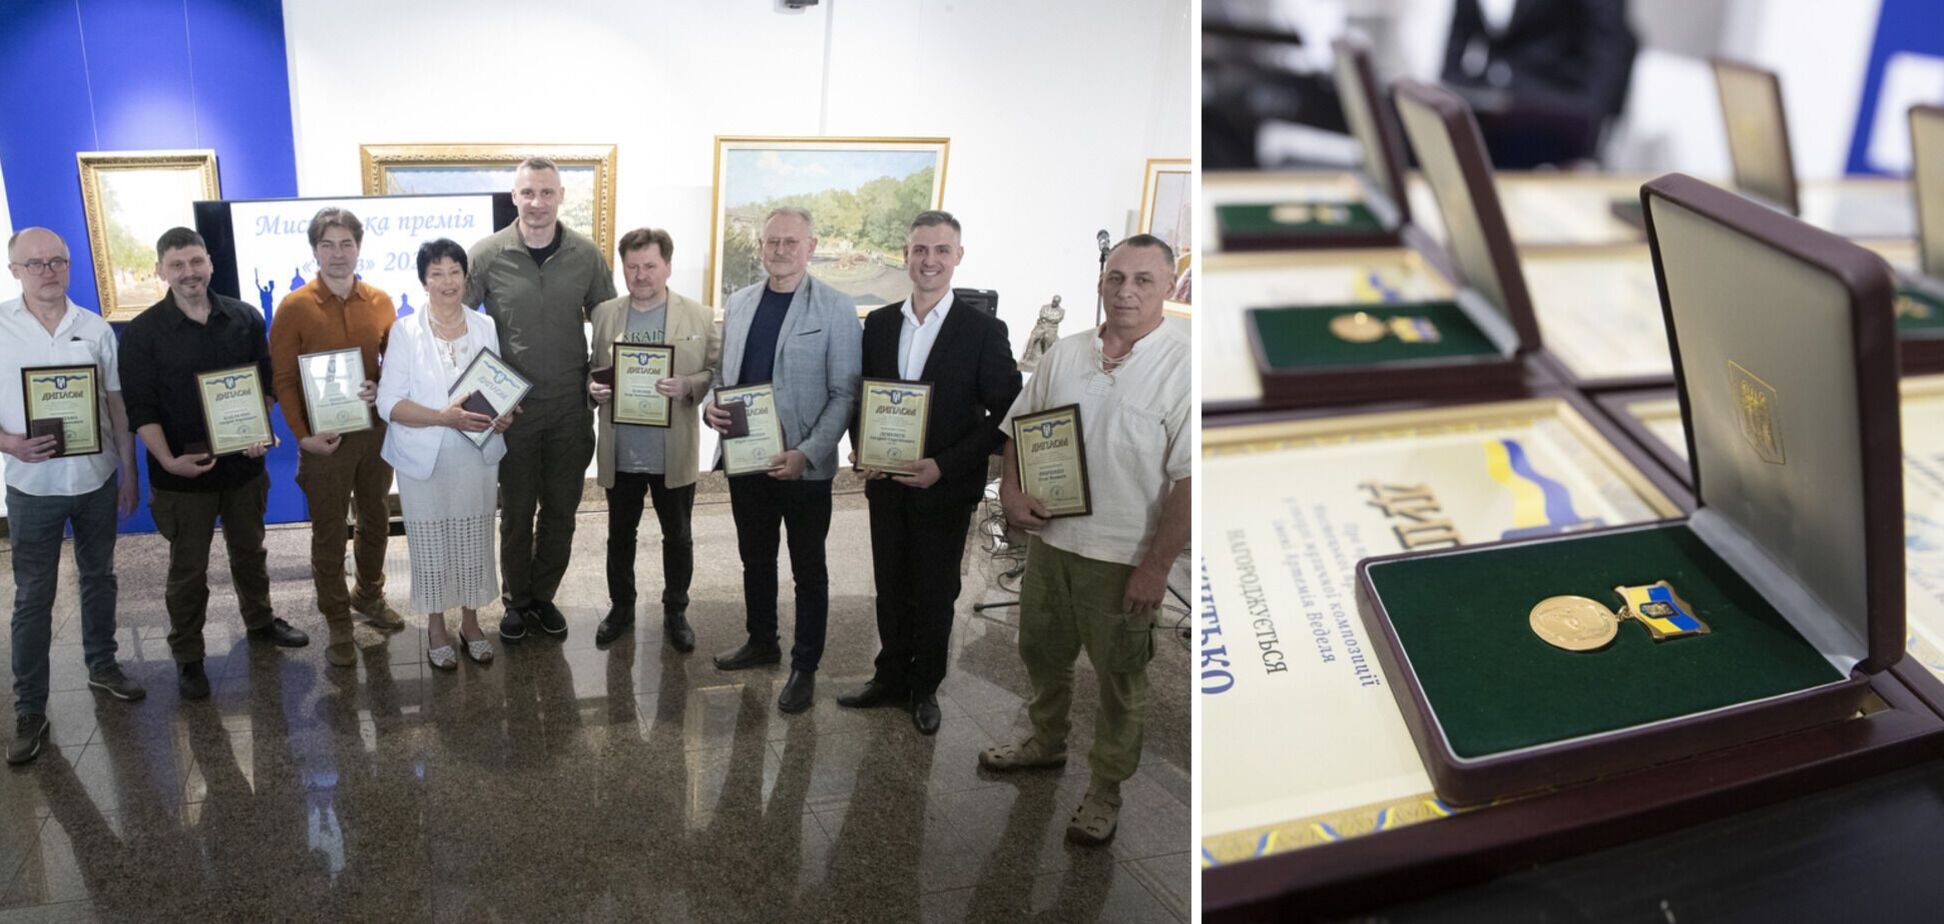 Кличко вручил выдающимся художникам столицы престижную Художественную премию 'Киев'. Фото